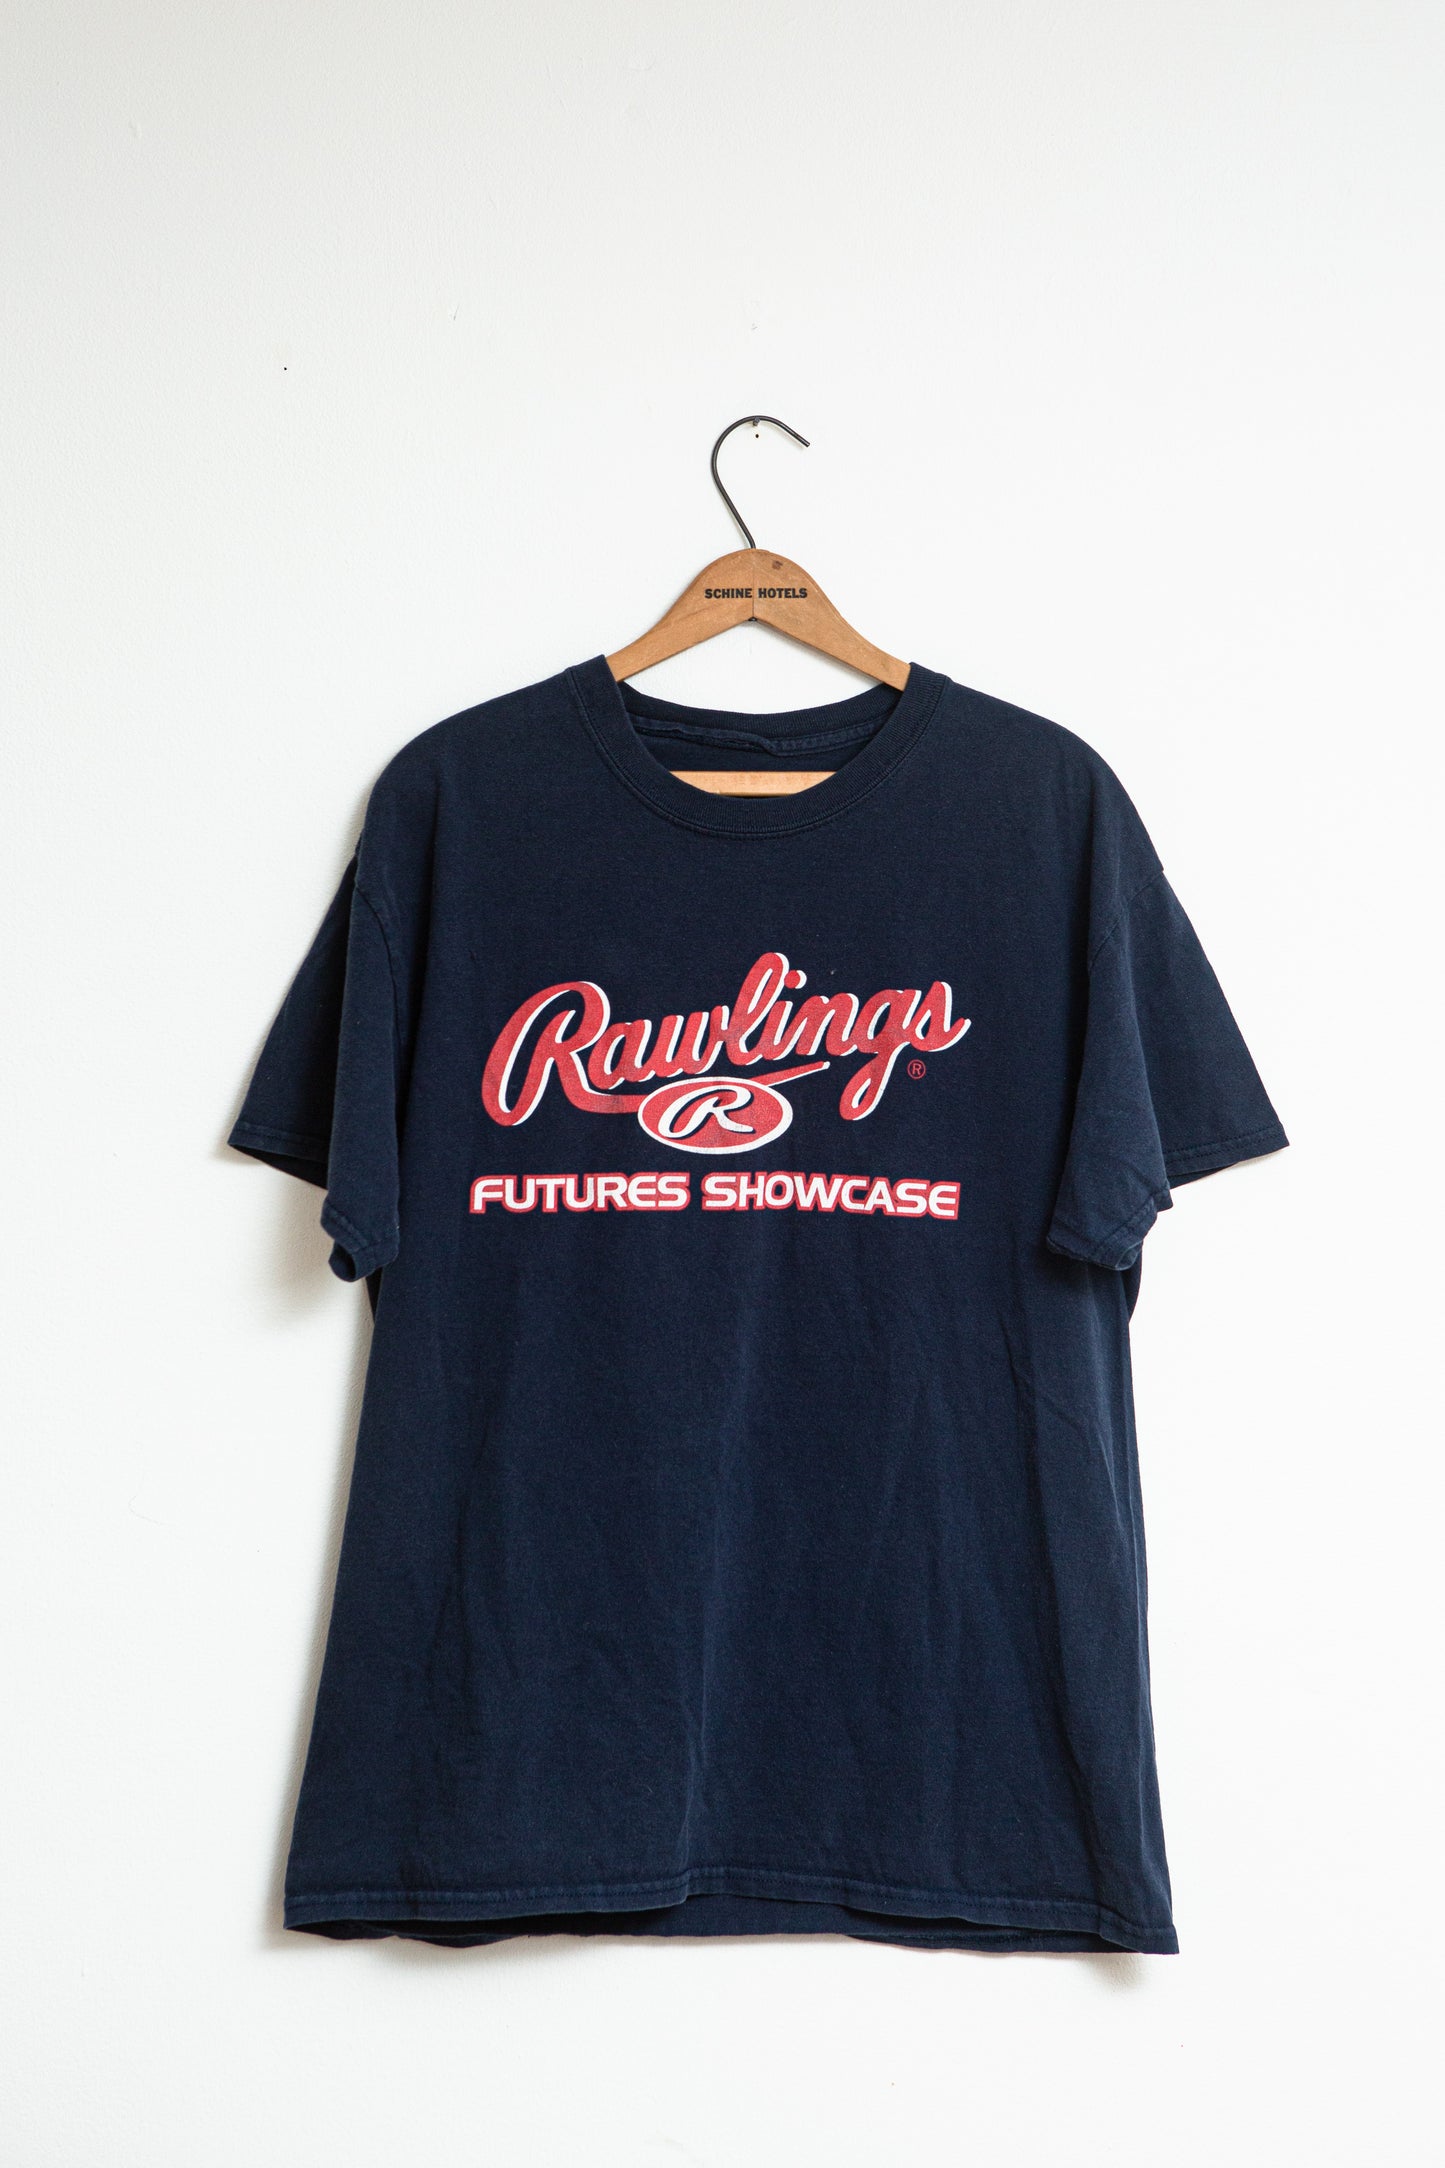 Vintage Rawlings Futures Showcase T-shirt